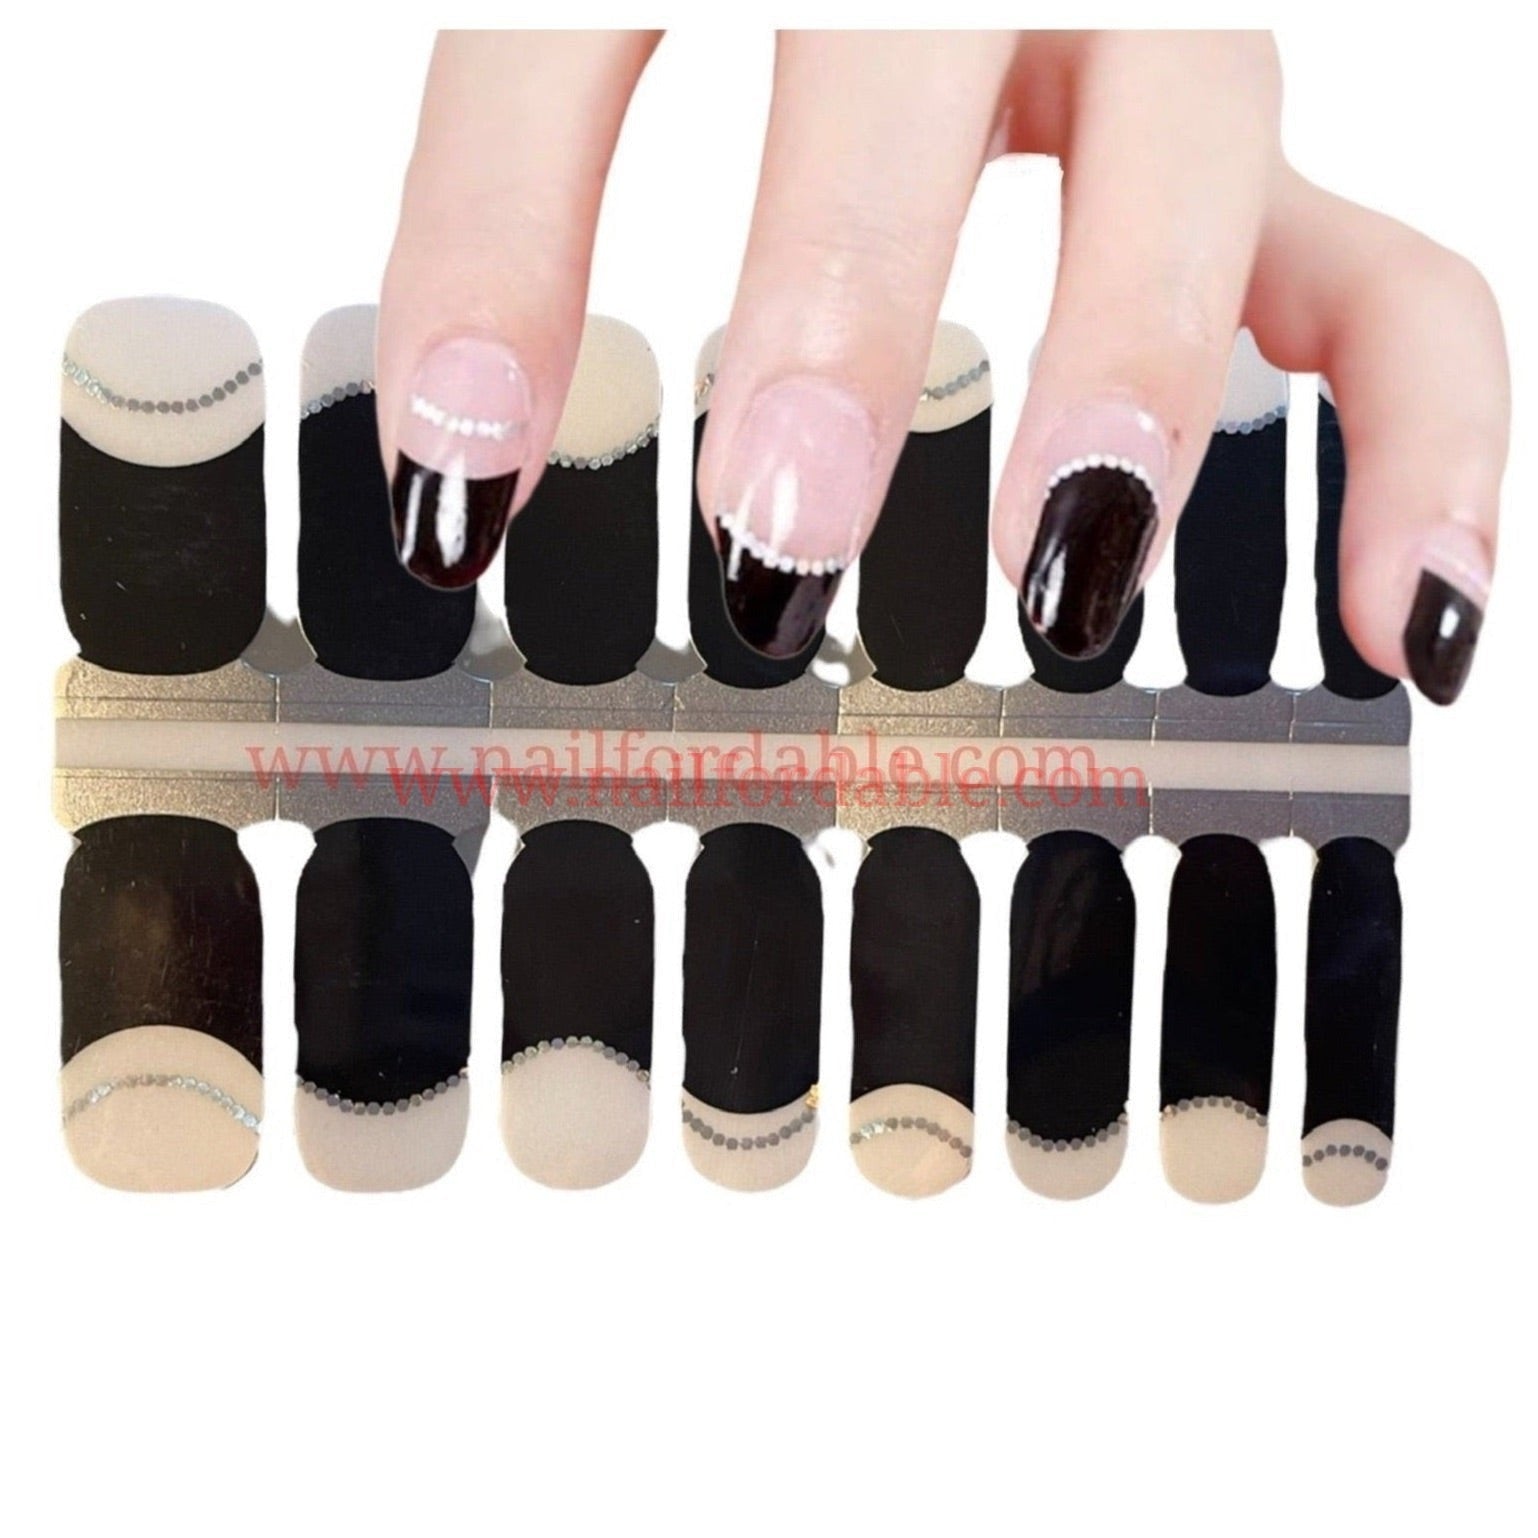 Elegant black french tips Nail Wraps | Semi Cured Gel Wraps | Gel Nail Wraps |Nail Polish | Nail Stickers